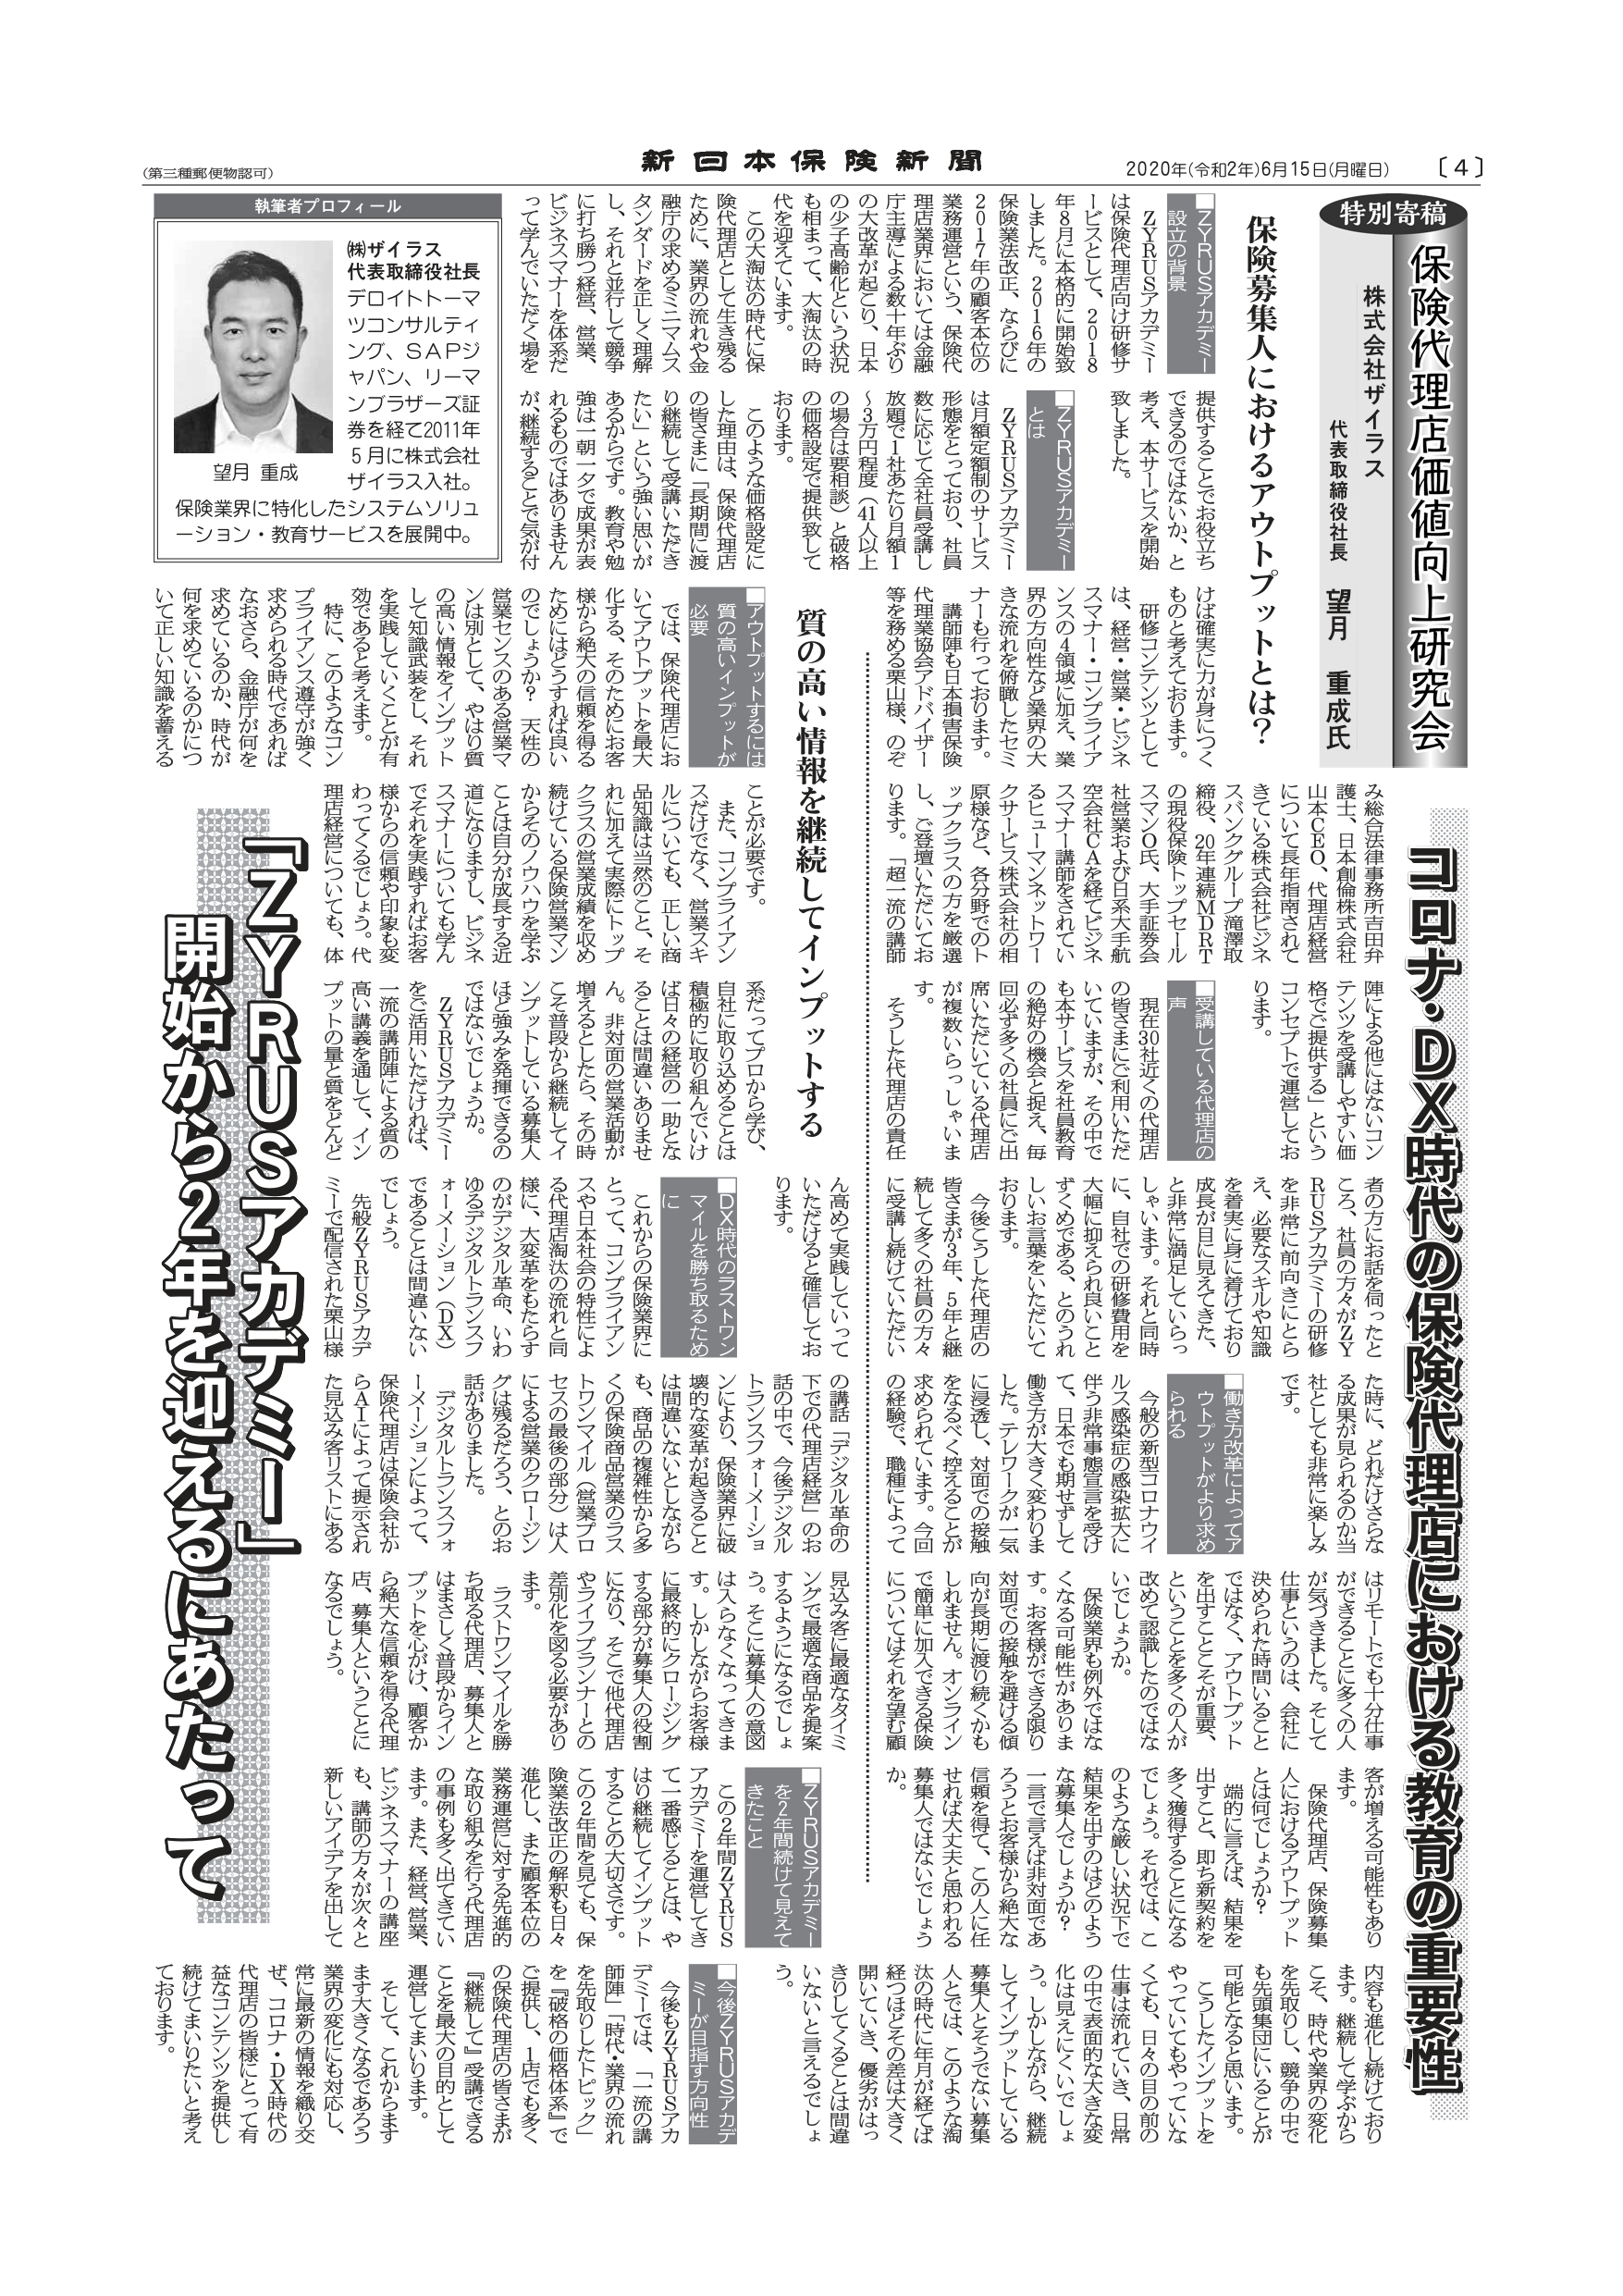 2020.6.15 新日本保険新聞記事-1